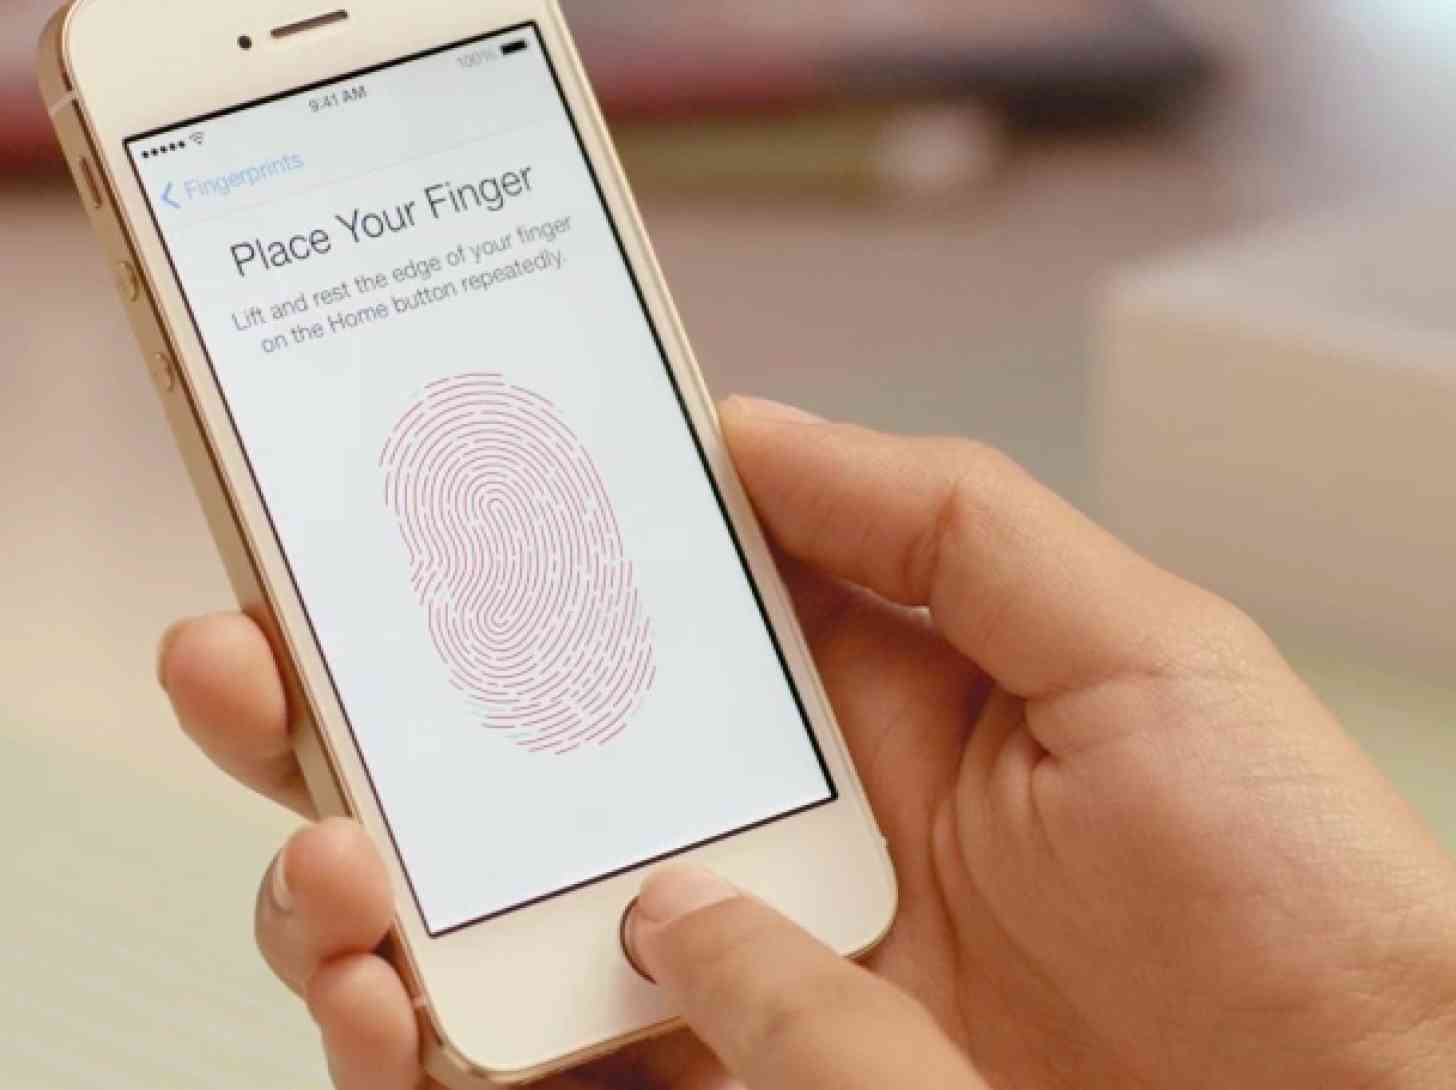 Apple iPhone 5s fingerprint scanner